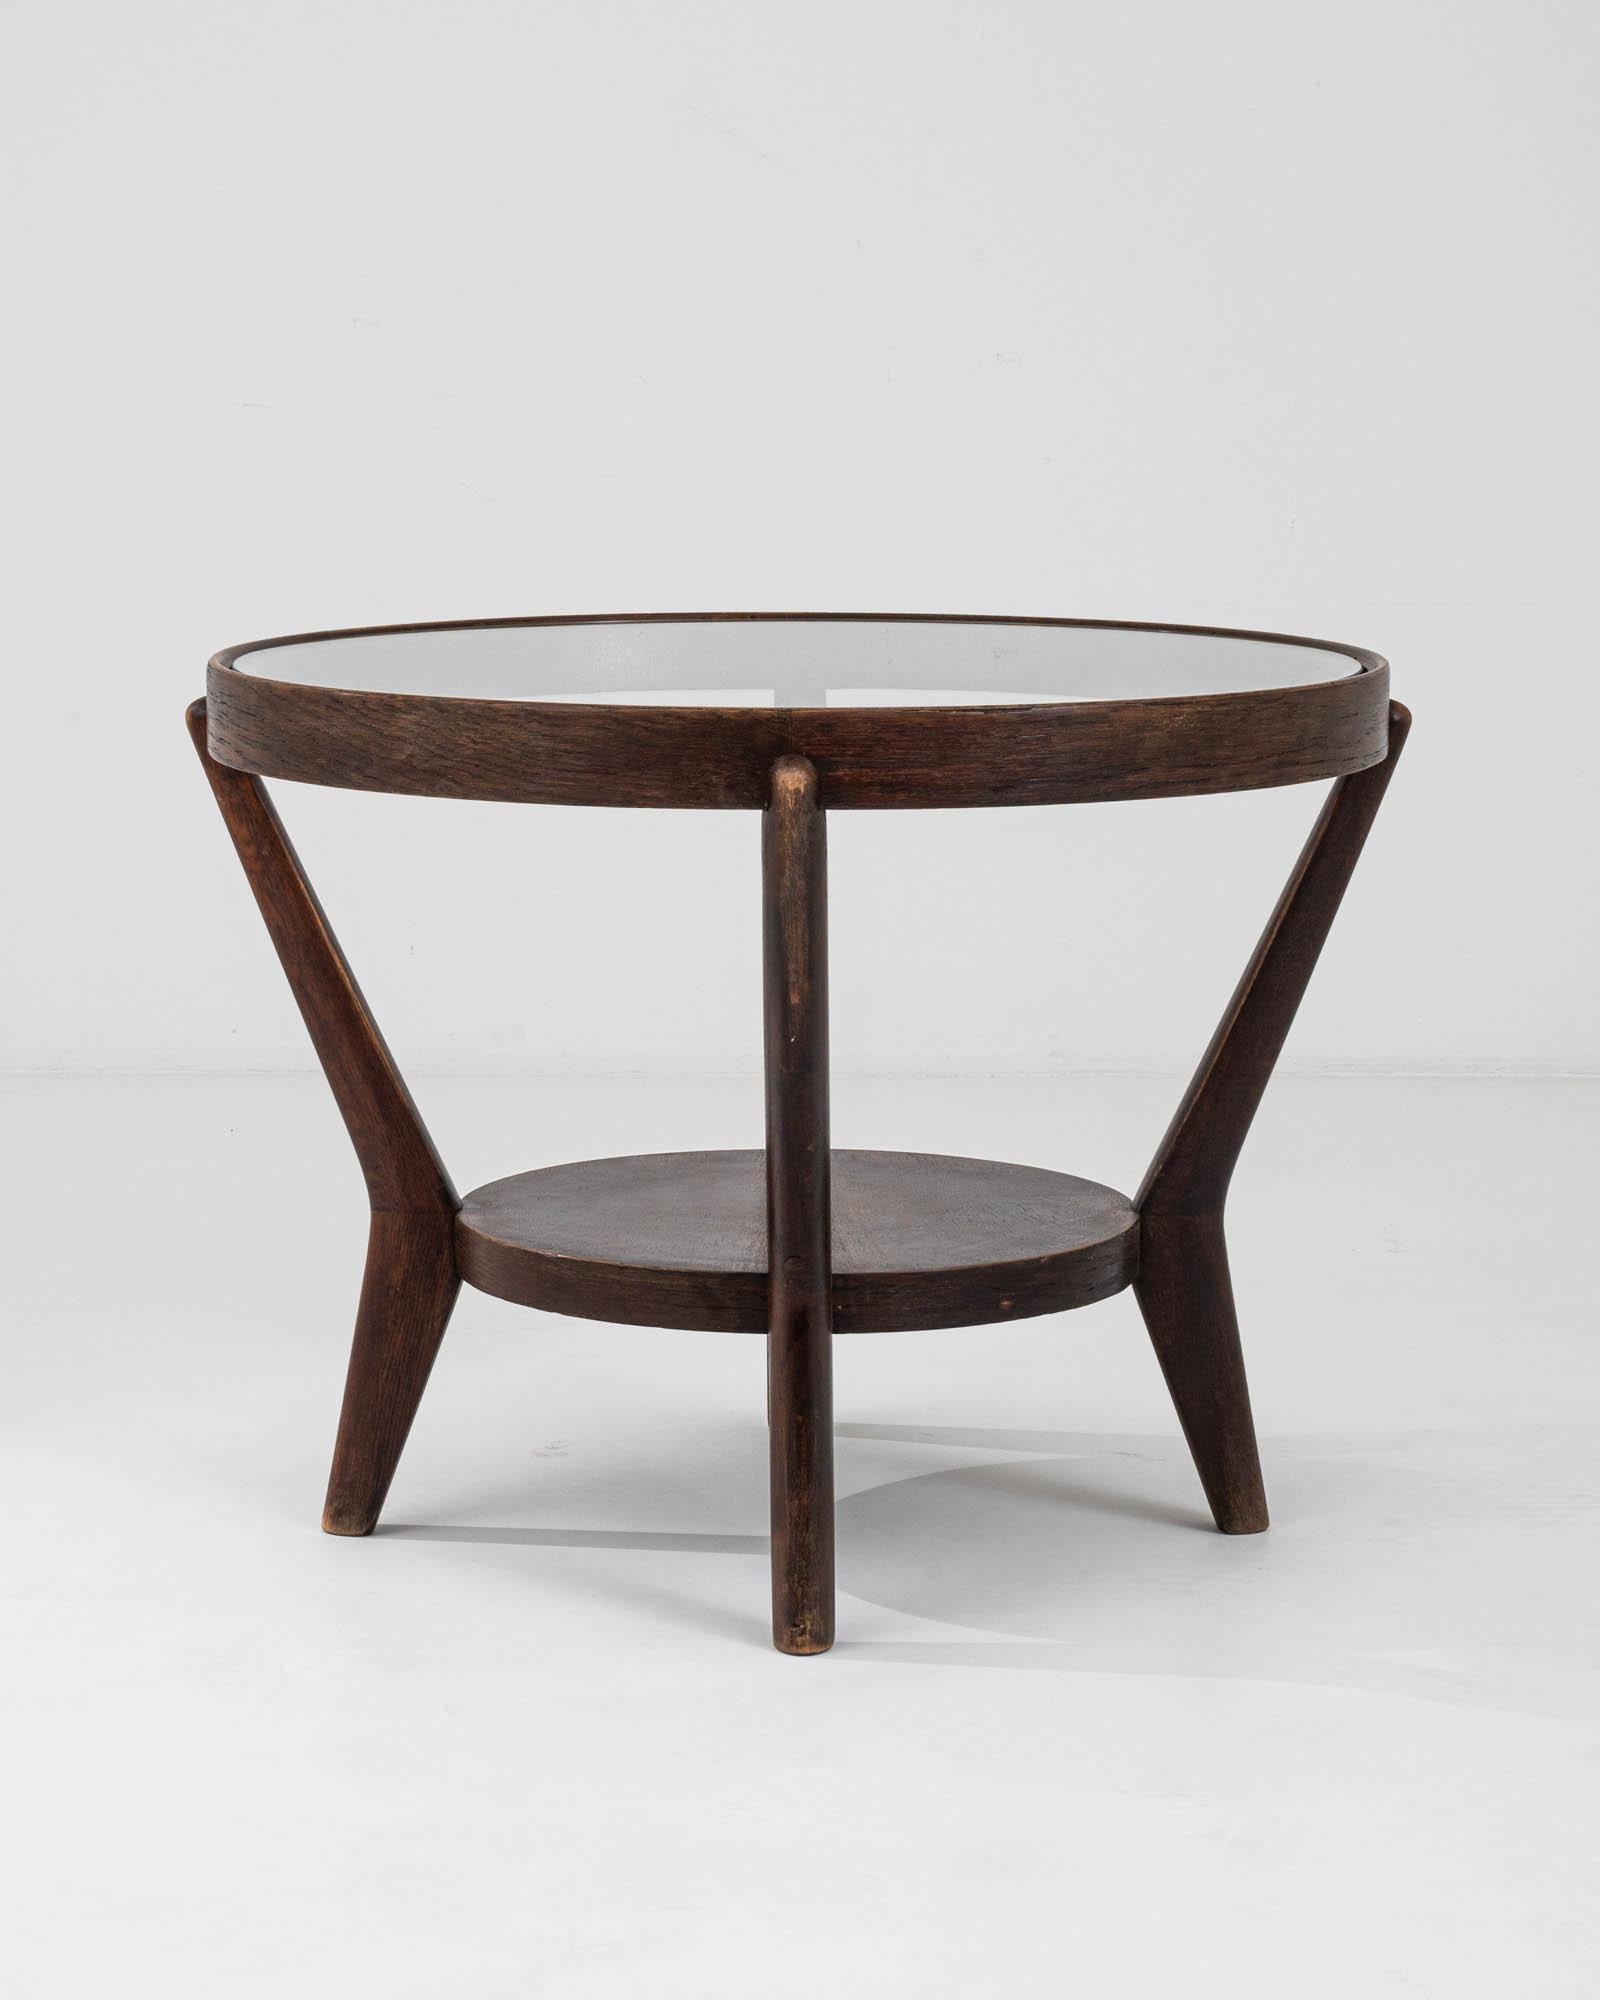 Cette table basse tchèque en bois des années 1960, conçue par K.Kozelkka & A.Kropacek, est un bel exemple de design moderne du milieu du siècle dernier. Son plateau en verre circulaire repose gracieusement sur un cadre en bois riche et foncé,